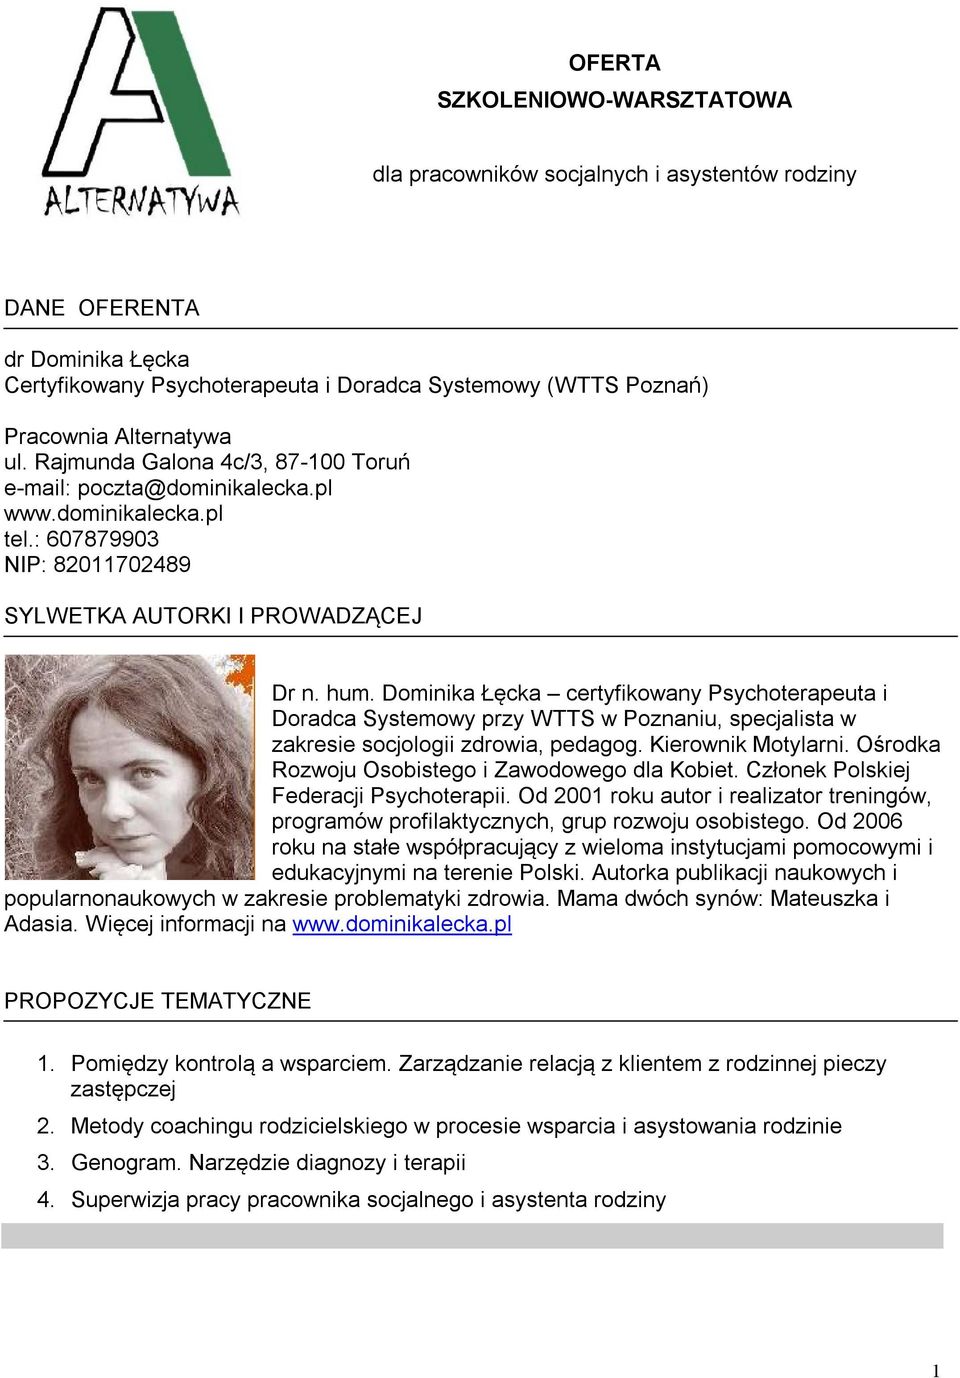 Dominika Łęcka certyfikowany Psychoterapeuta i Doradca Systemowy przy WTTS w Poznaniu, specjalista w zakresie socjologii zdrowia, pedagog. Kierownik Motylarni.